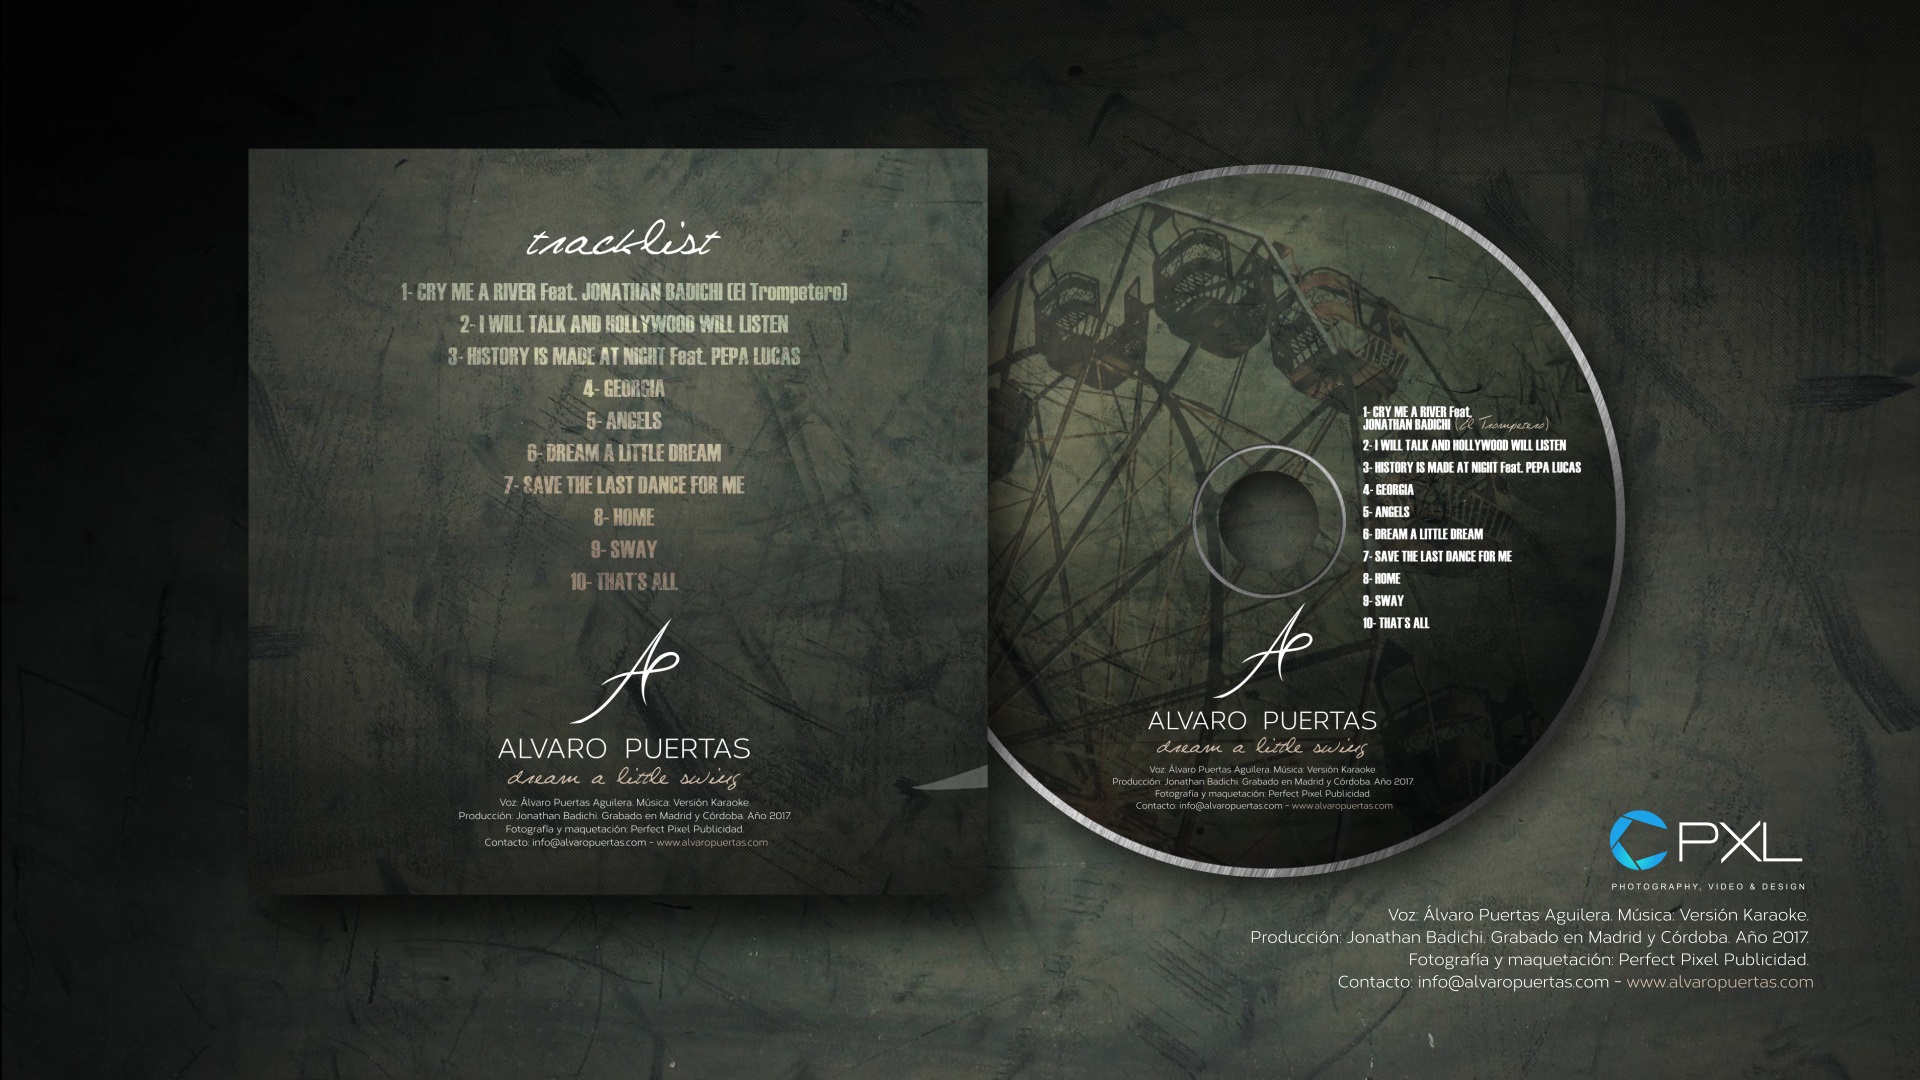 Álvaro Puertas - dream a little swing album CD design